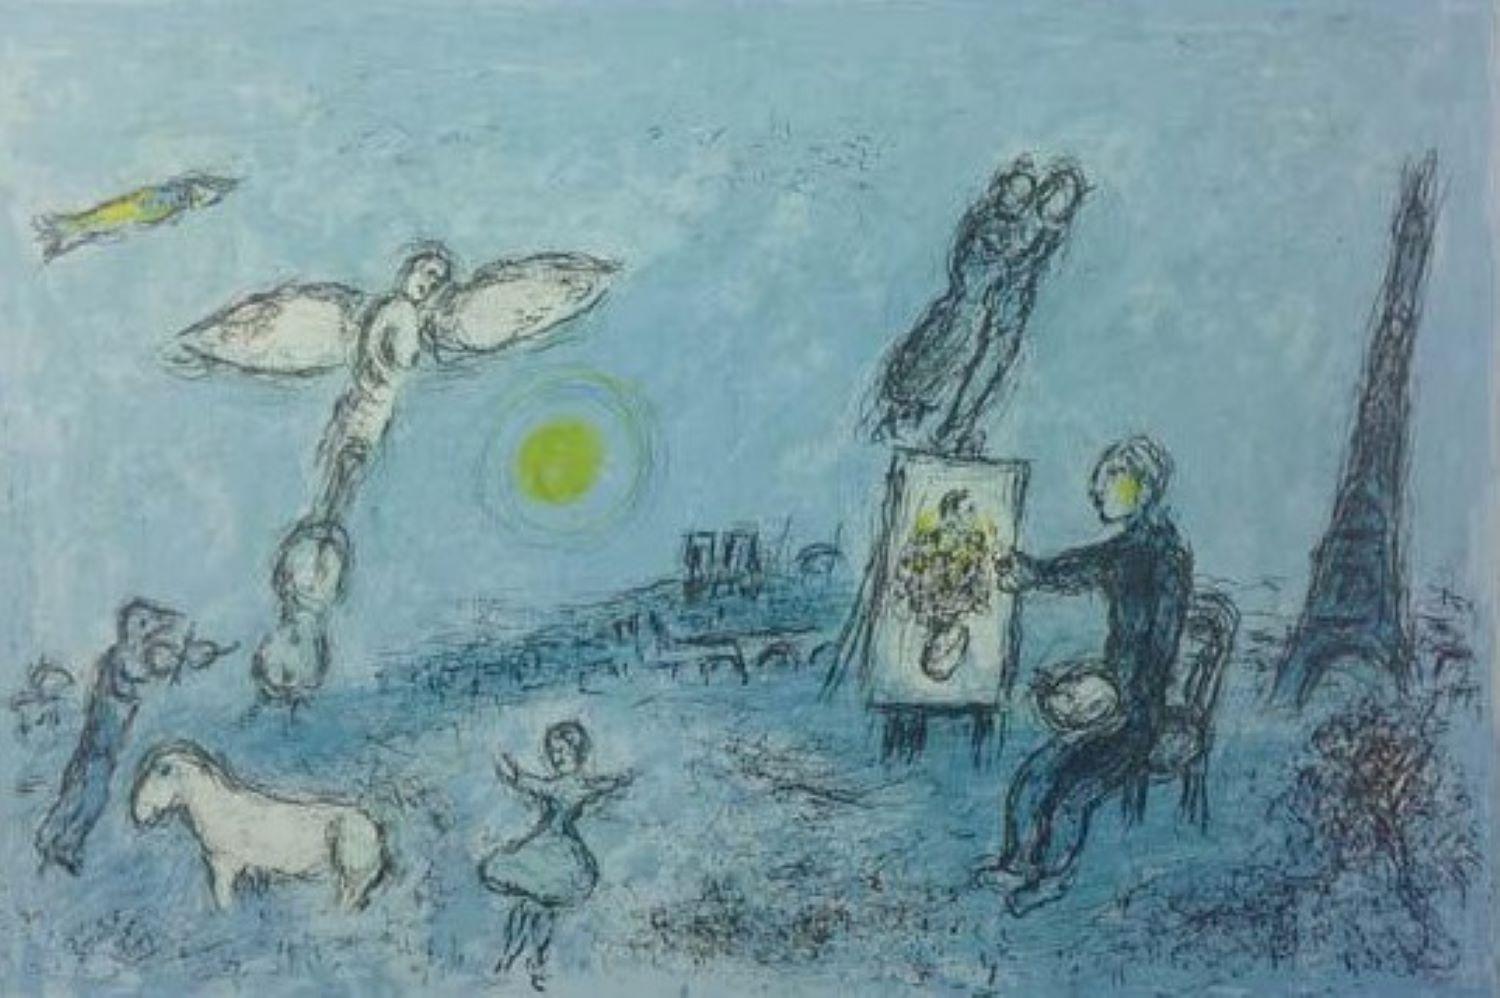 Marc Chagall Figurative Print - "Le Peintre et son Double", page from Derrière le miroir, Maeght Editeur, 1981. 